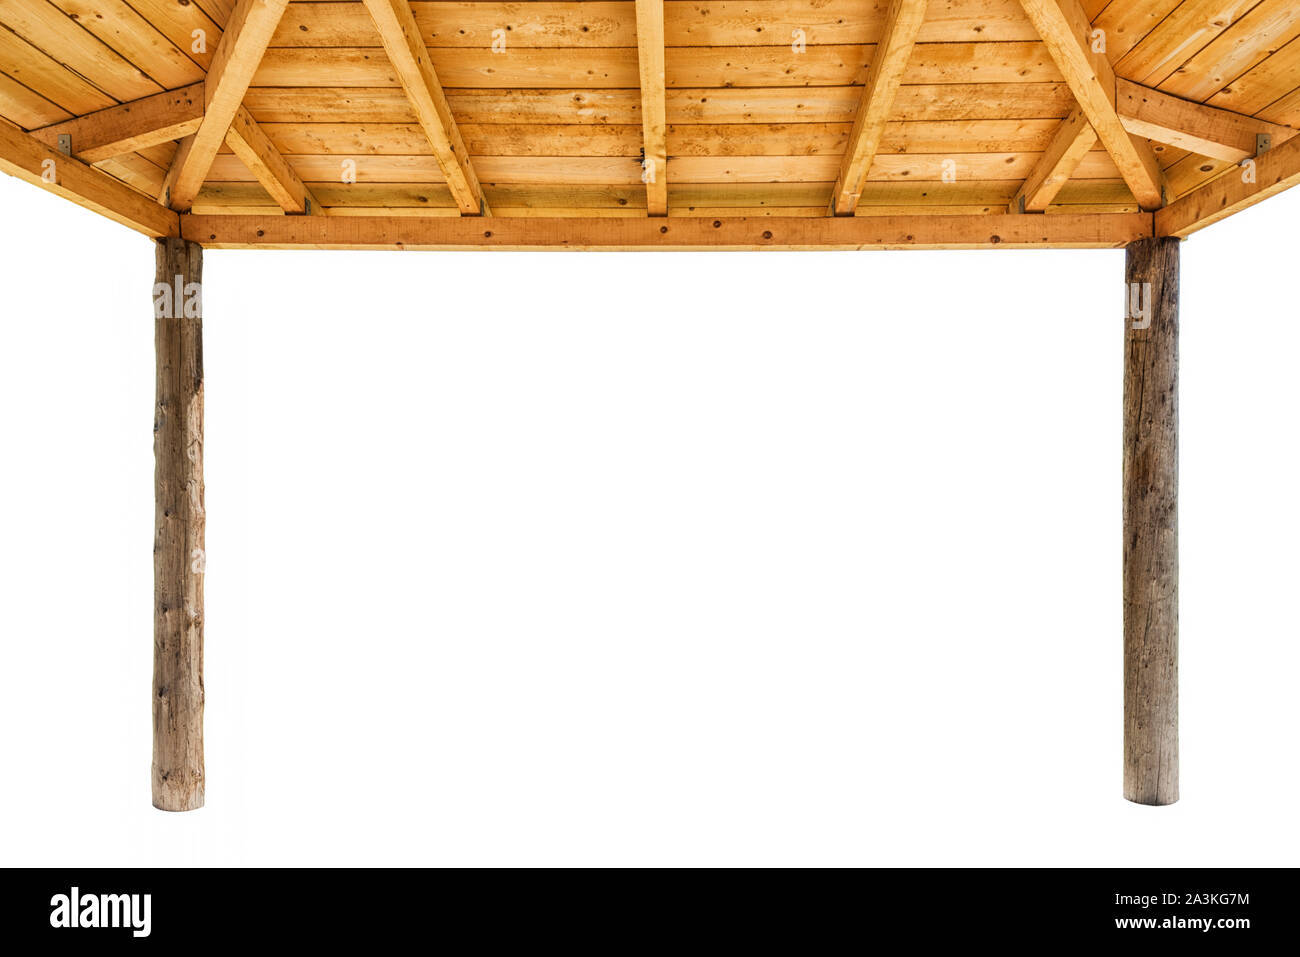 Un toit en bois kiosque comme vu de dessous isolated on white Banque D'Images